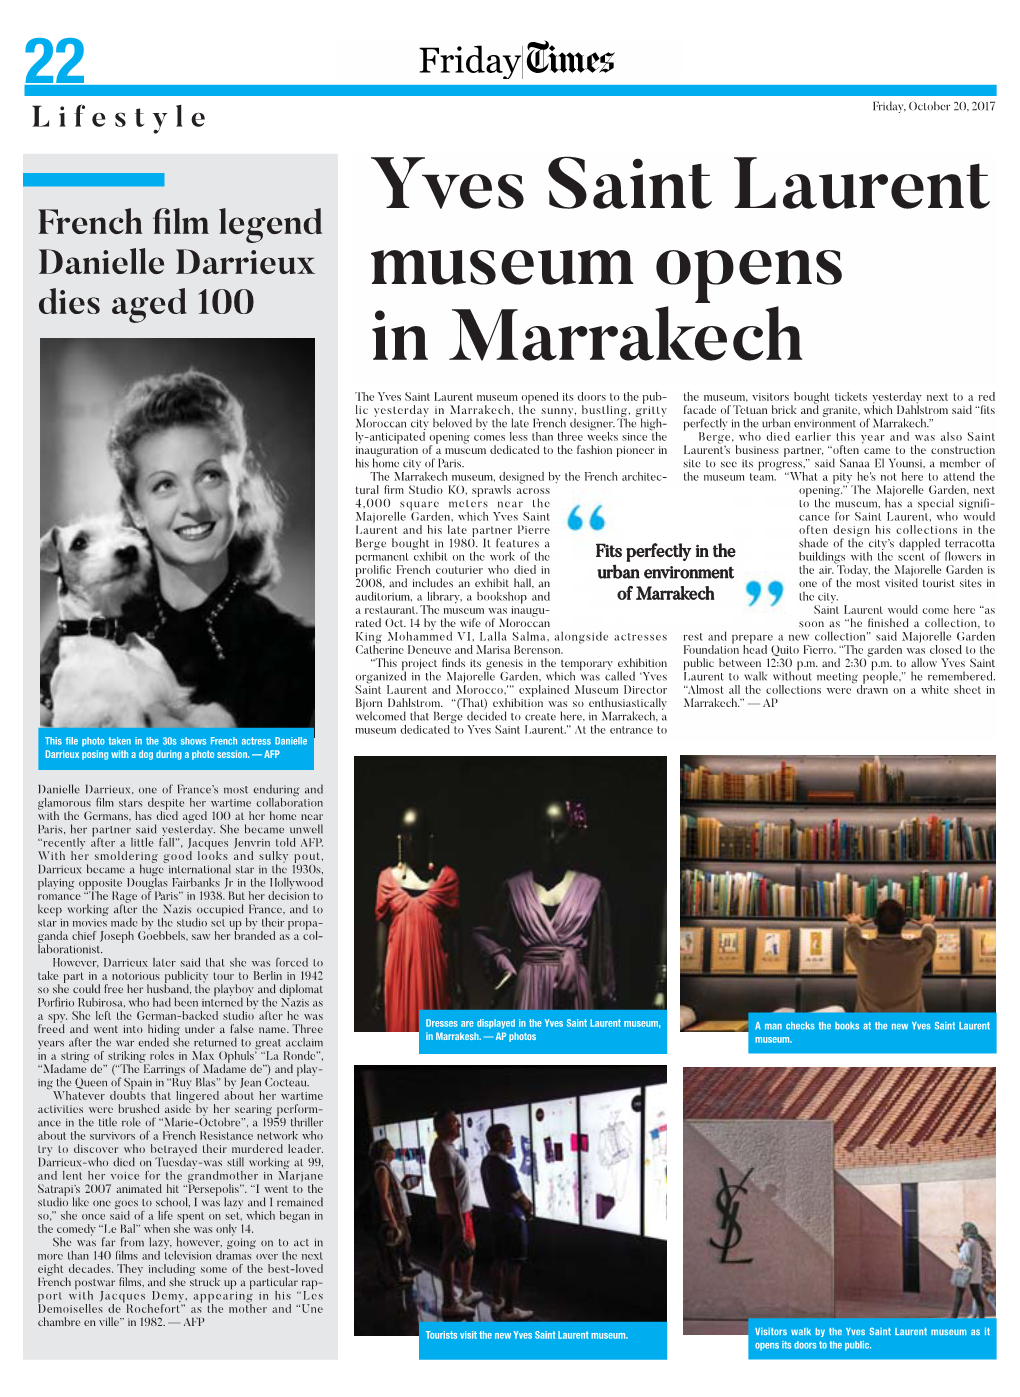 Yves Saint Laurent Museum Opens in Marrakech